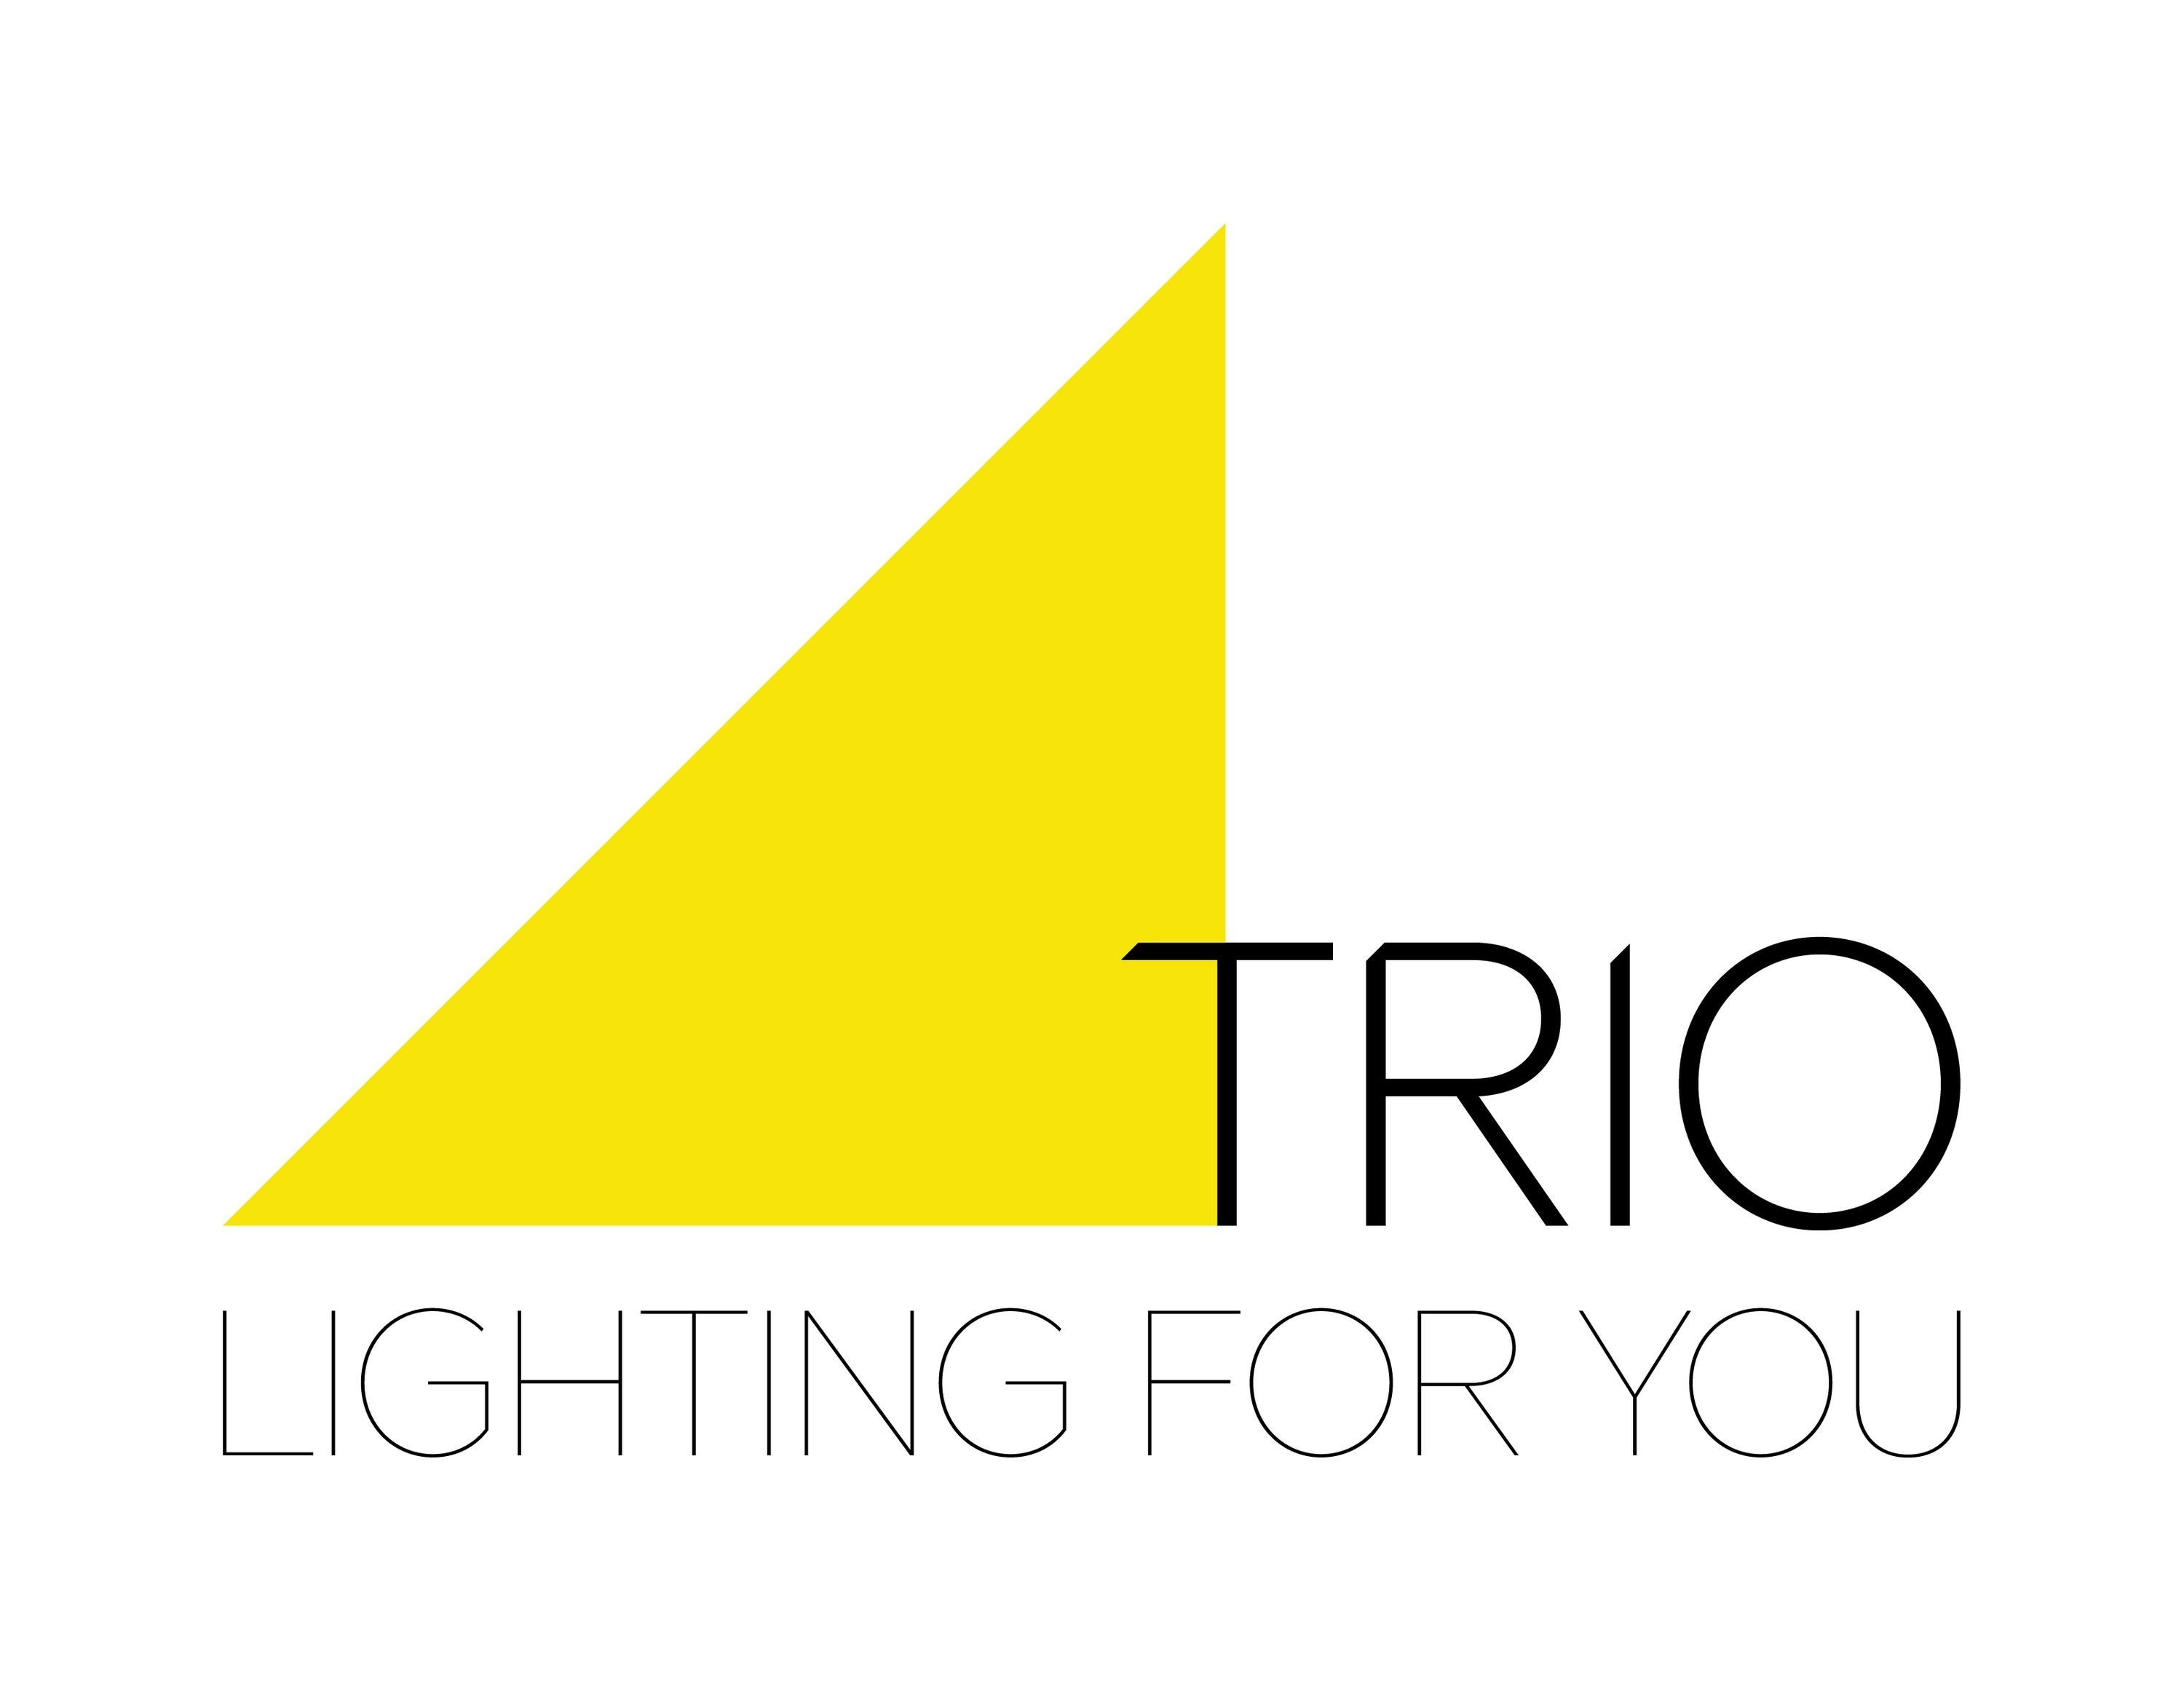 TRIO Leuchten Stehlampe Stehleuchte, (BH BH BRANTFORD gold TRIO-Leuchten cm Stehleuchte cm) 30x180 30x180